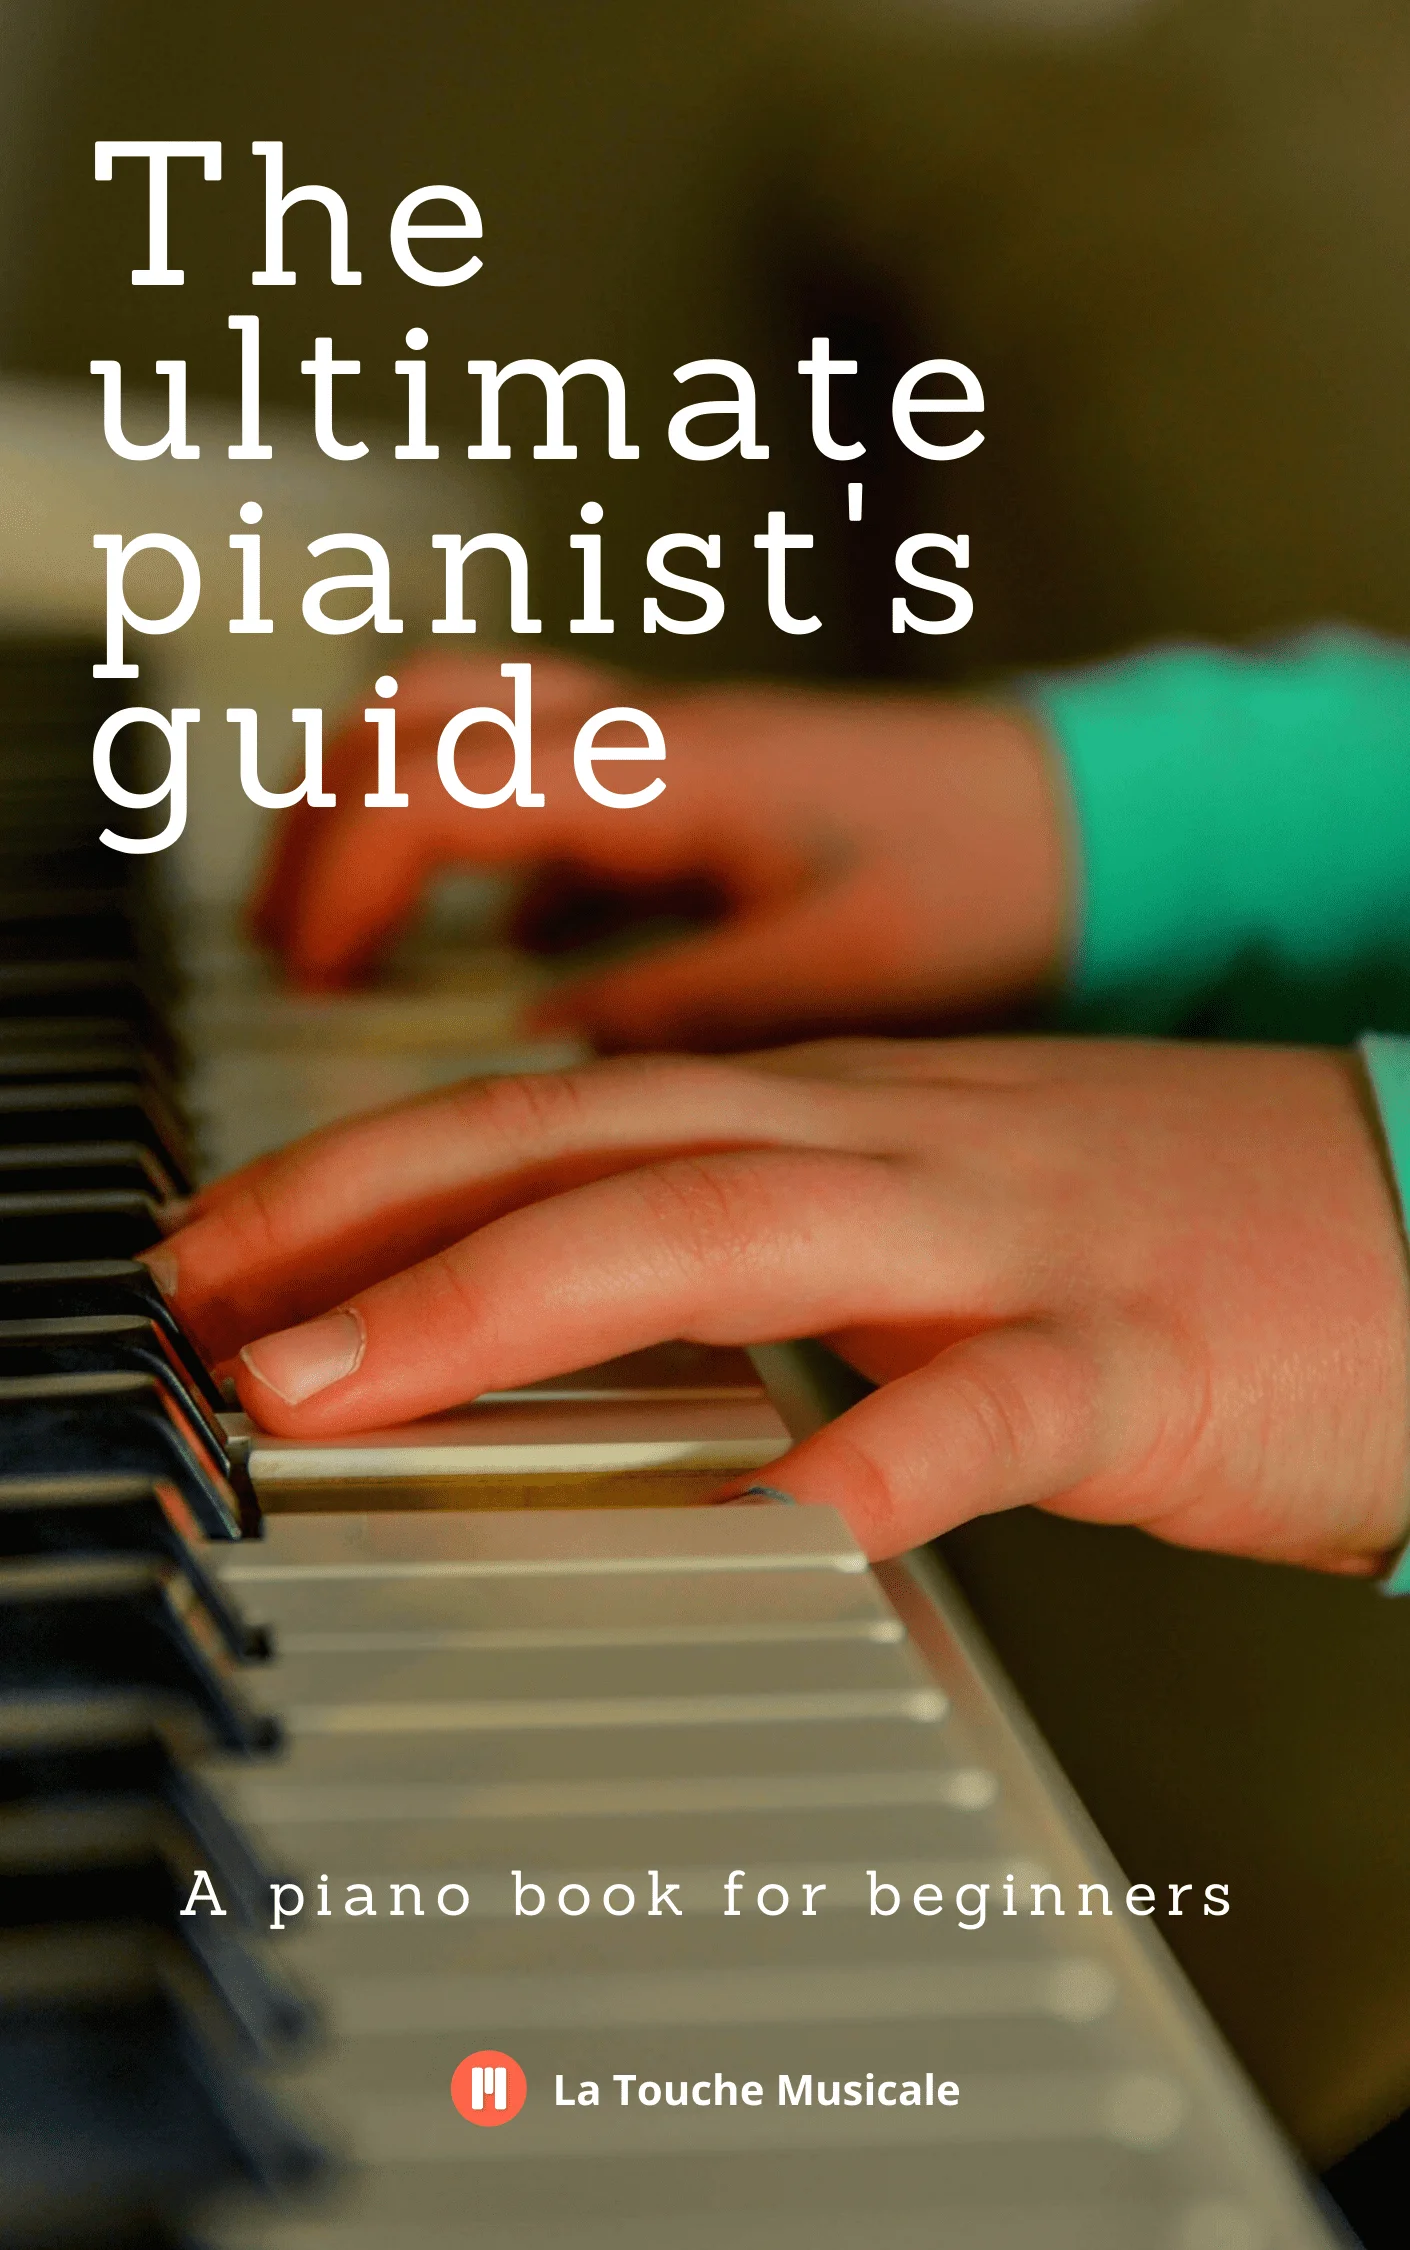 piano book pdf free download